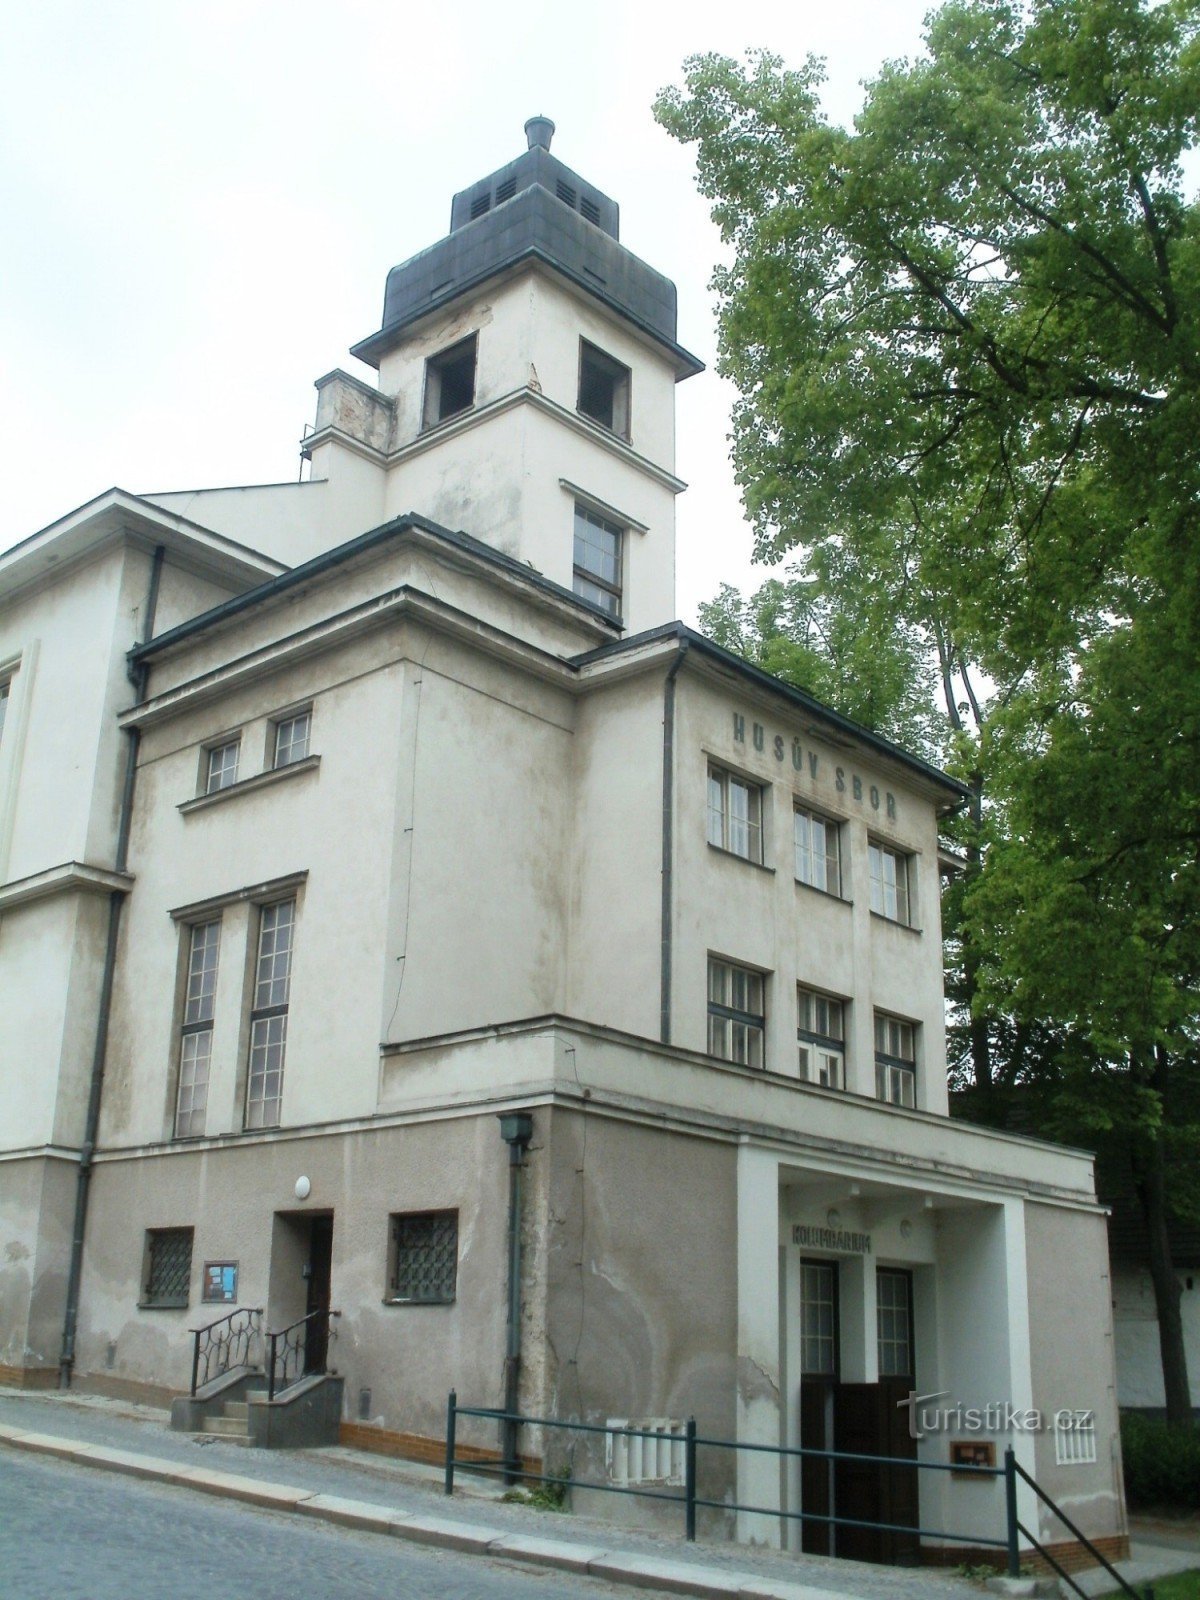 Havlíčkův Brod - フス派教会の CS の教会